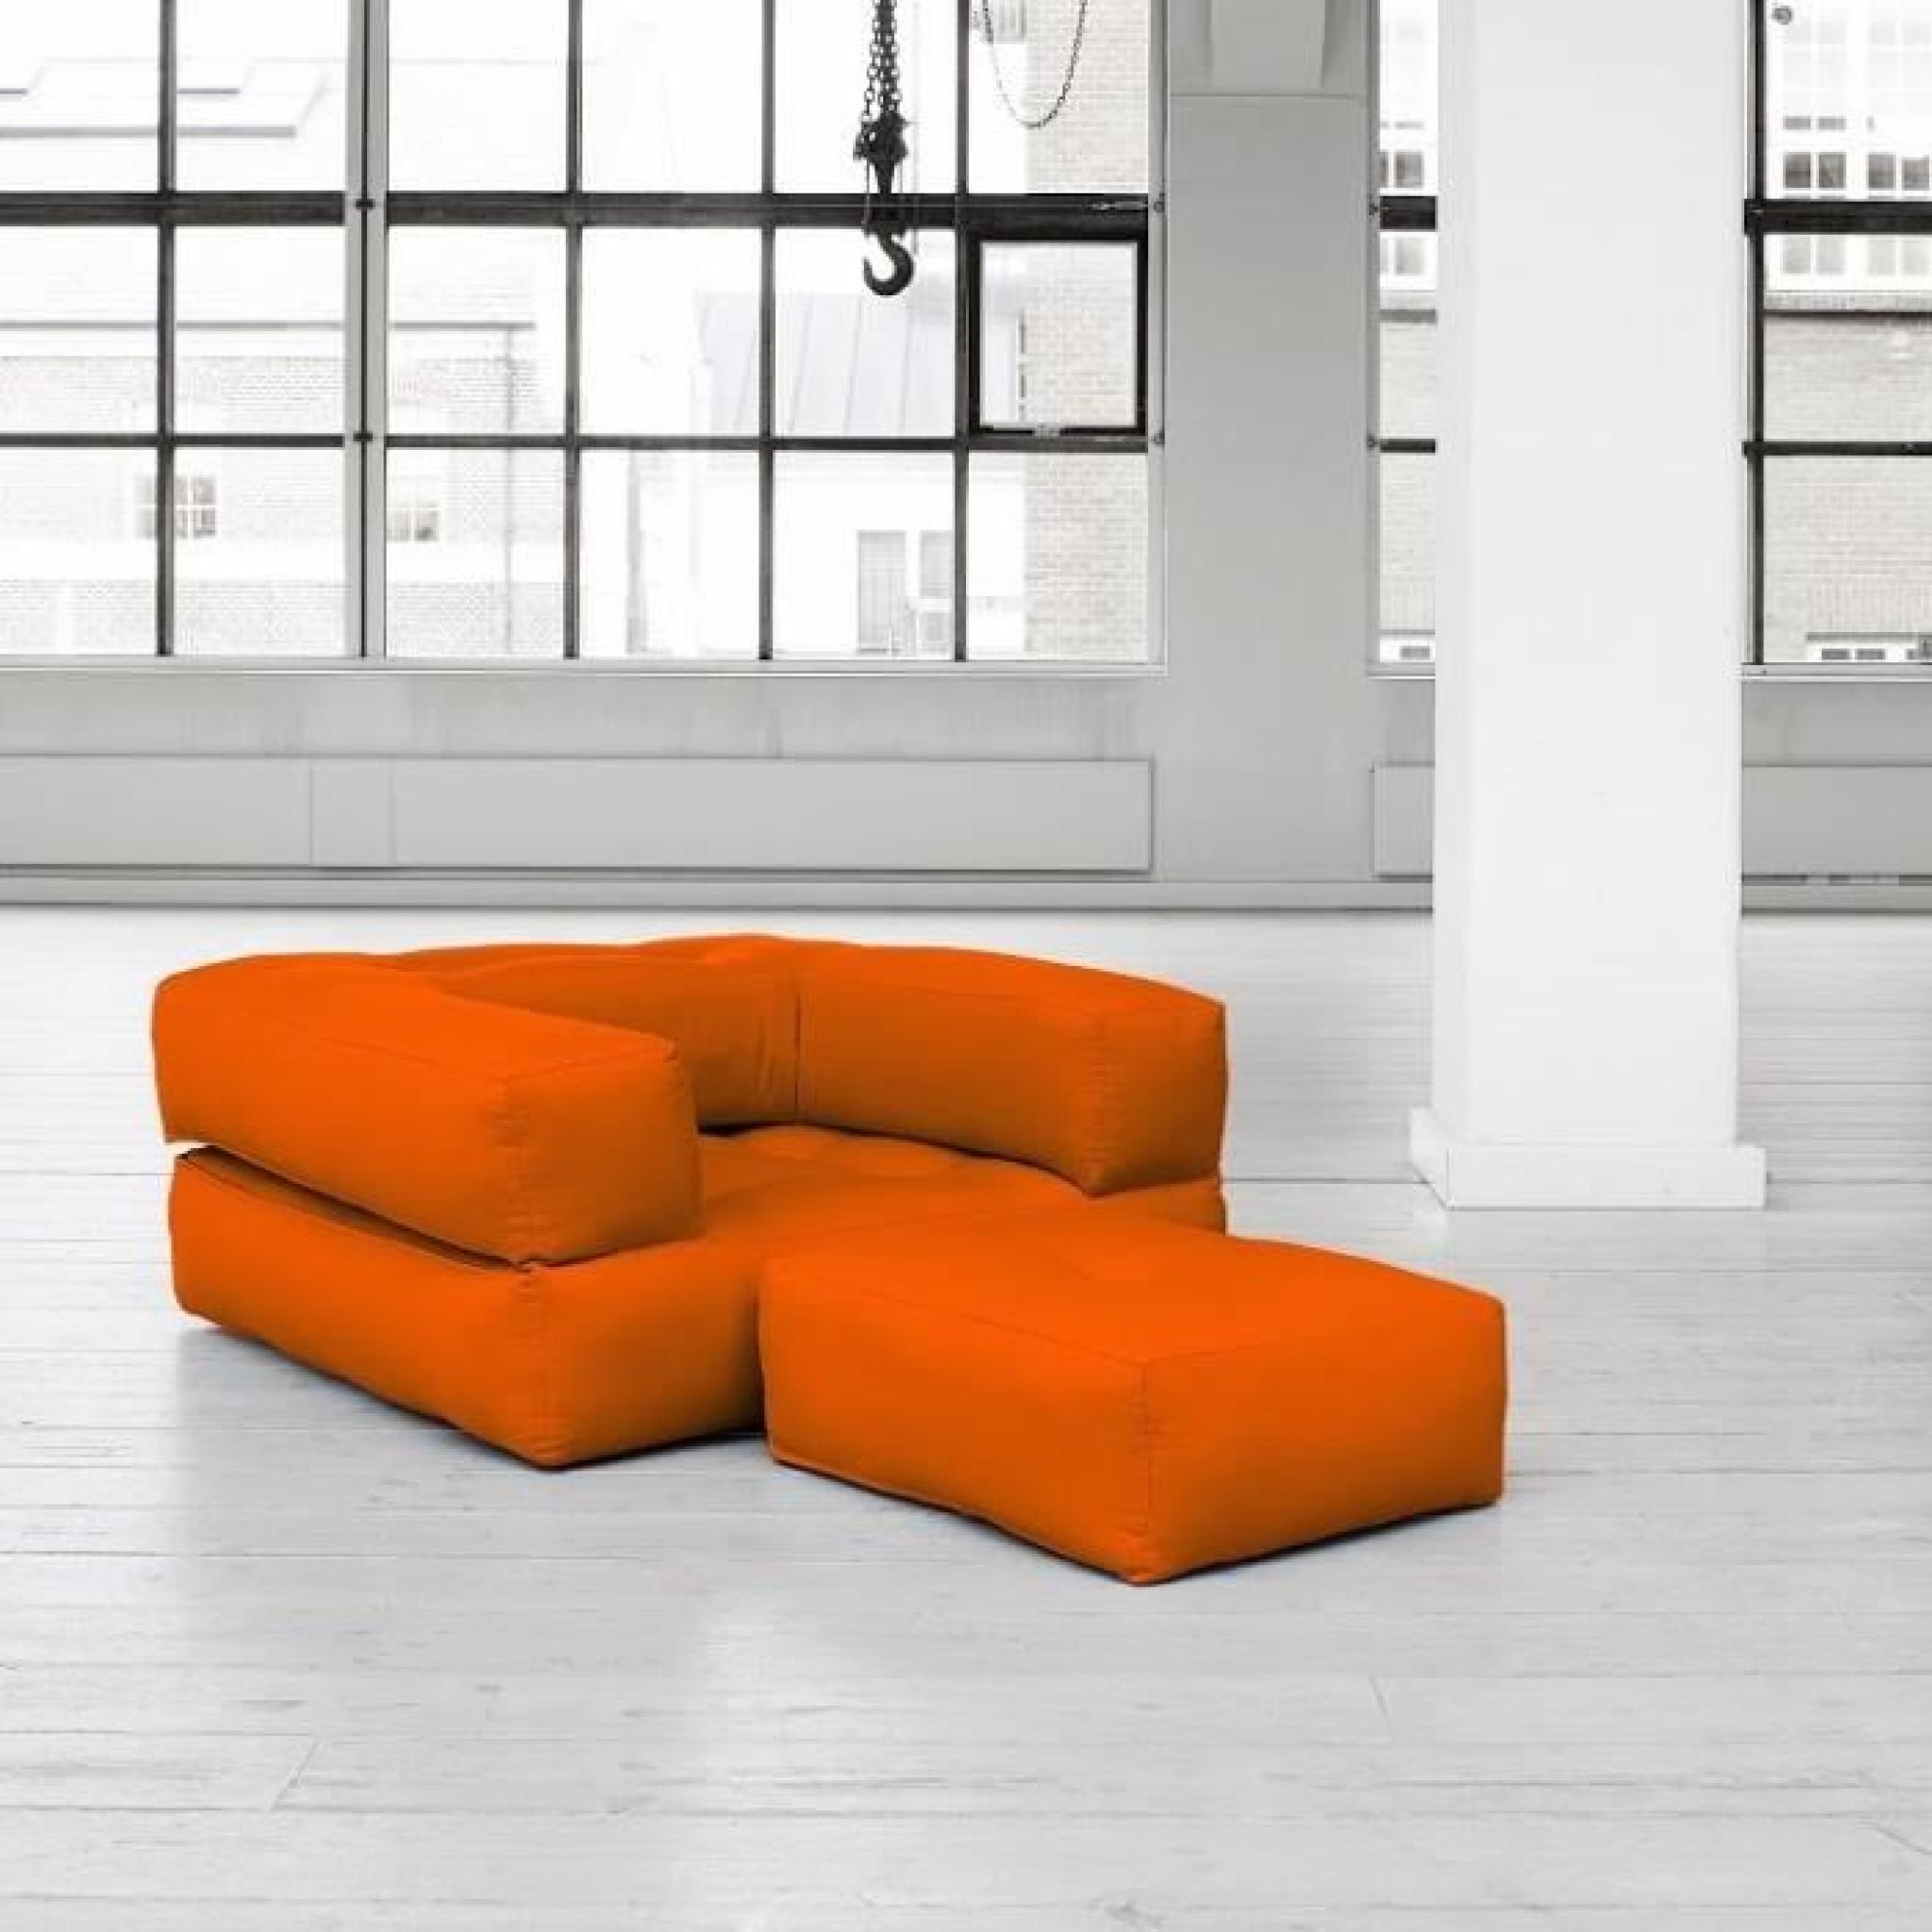 Fauteuil CUBE 3 en 1 futon orange couchage 90*190*25cm pas cher